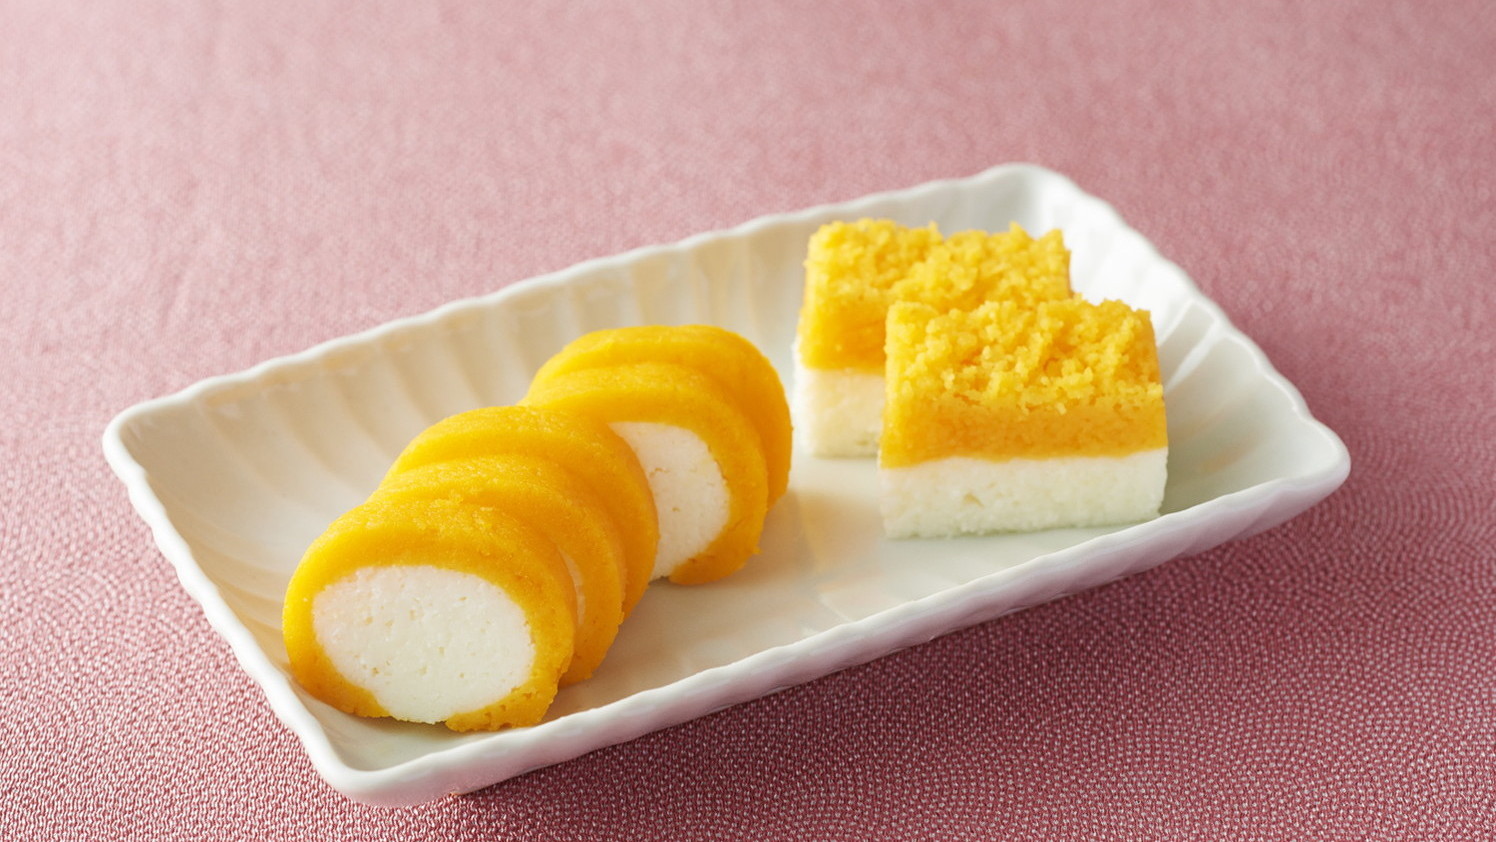 Hướng dẫn làm Nishiki-tamago món trứng 2 màu của Nhật ngon.